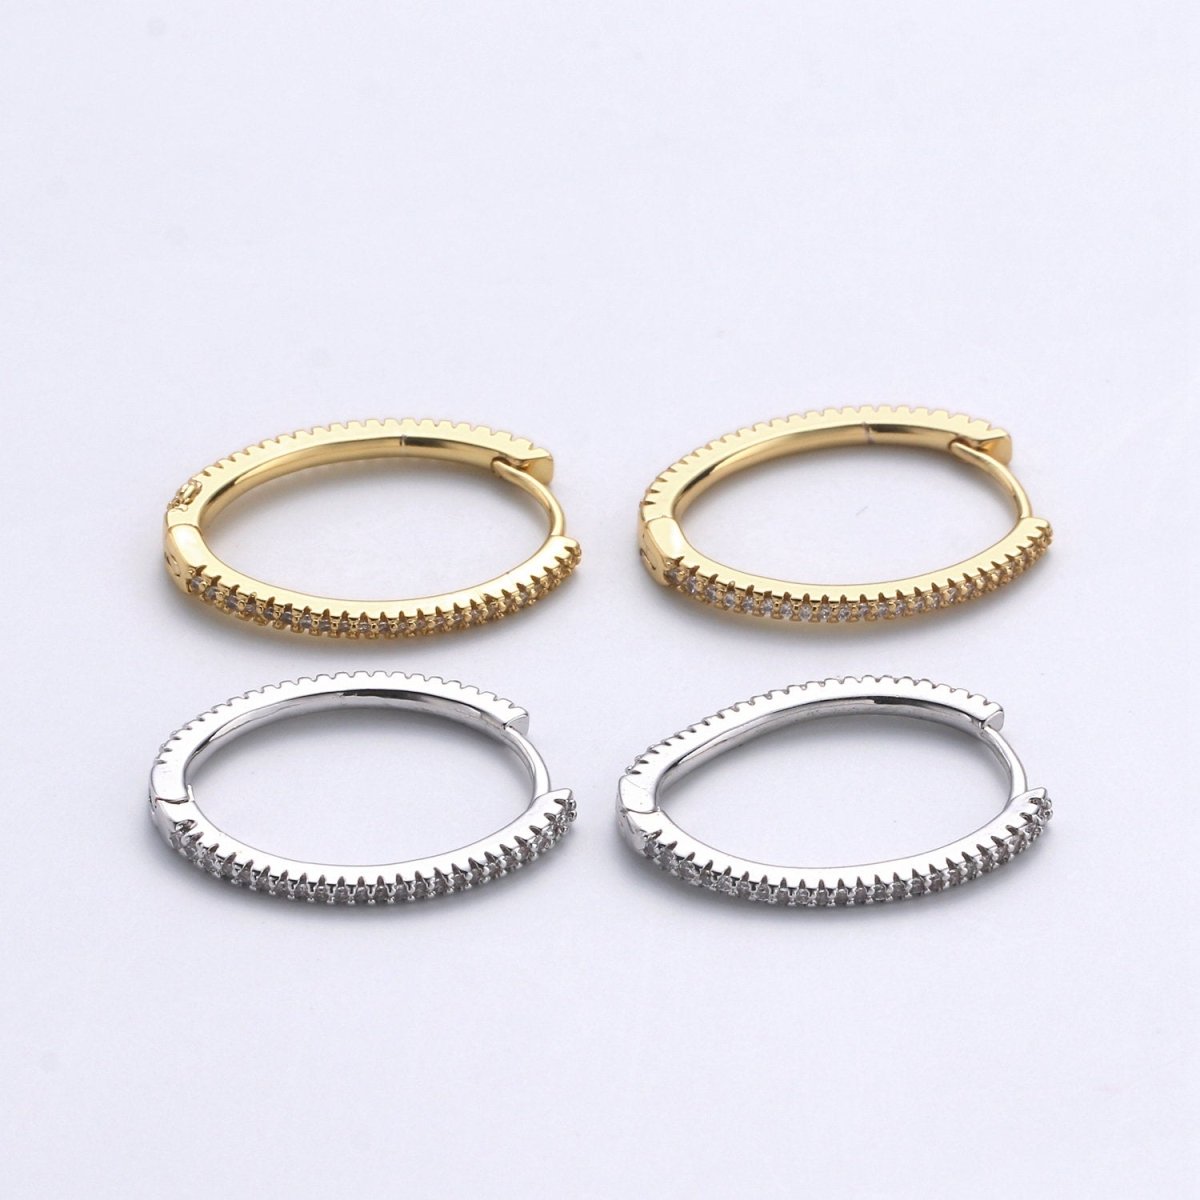 Gold Hoop Earrings, 14K Gold Plated Sterling Silver Earrings, Micro Pave CZ Hoops, CZ Diamond Huggie Hoop, Hypoallergenic, K-618, K-619 - DLUXCA